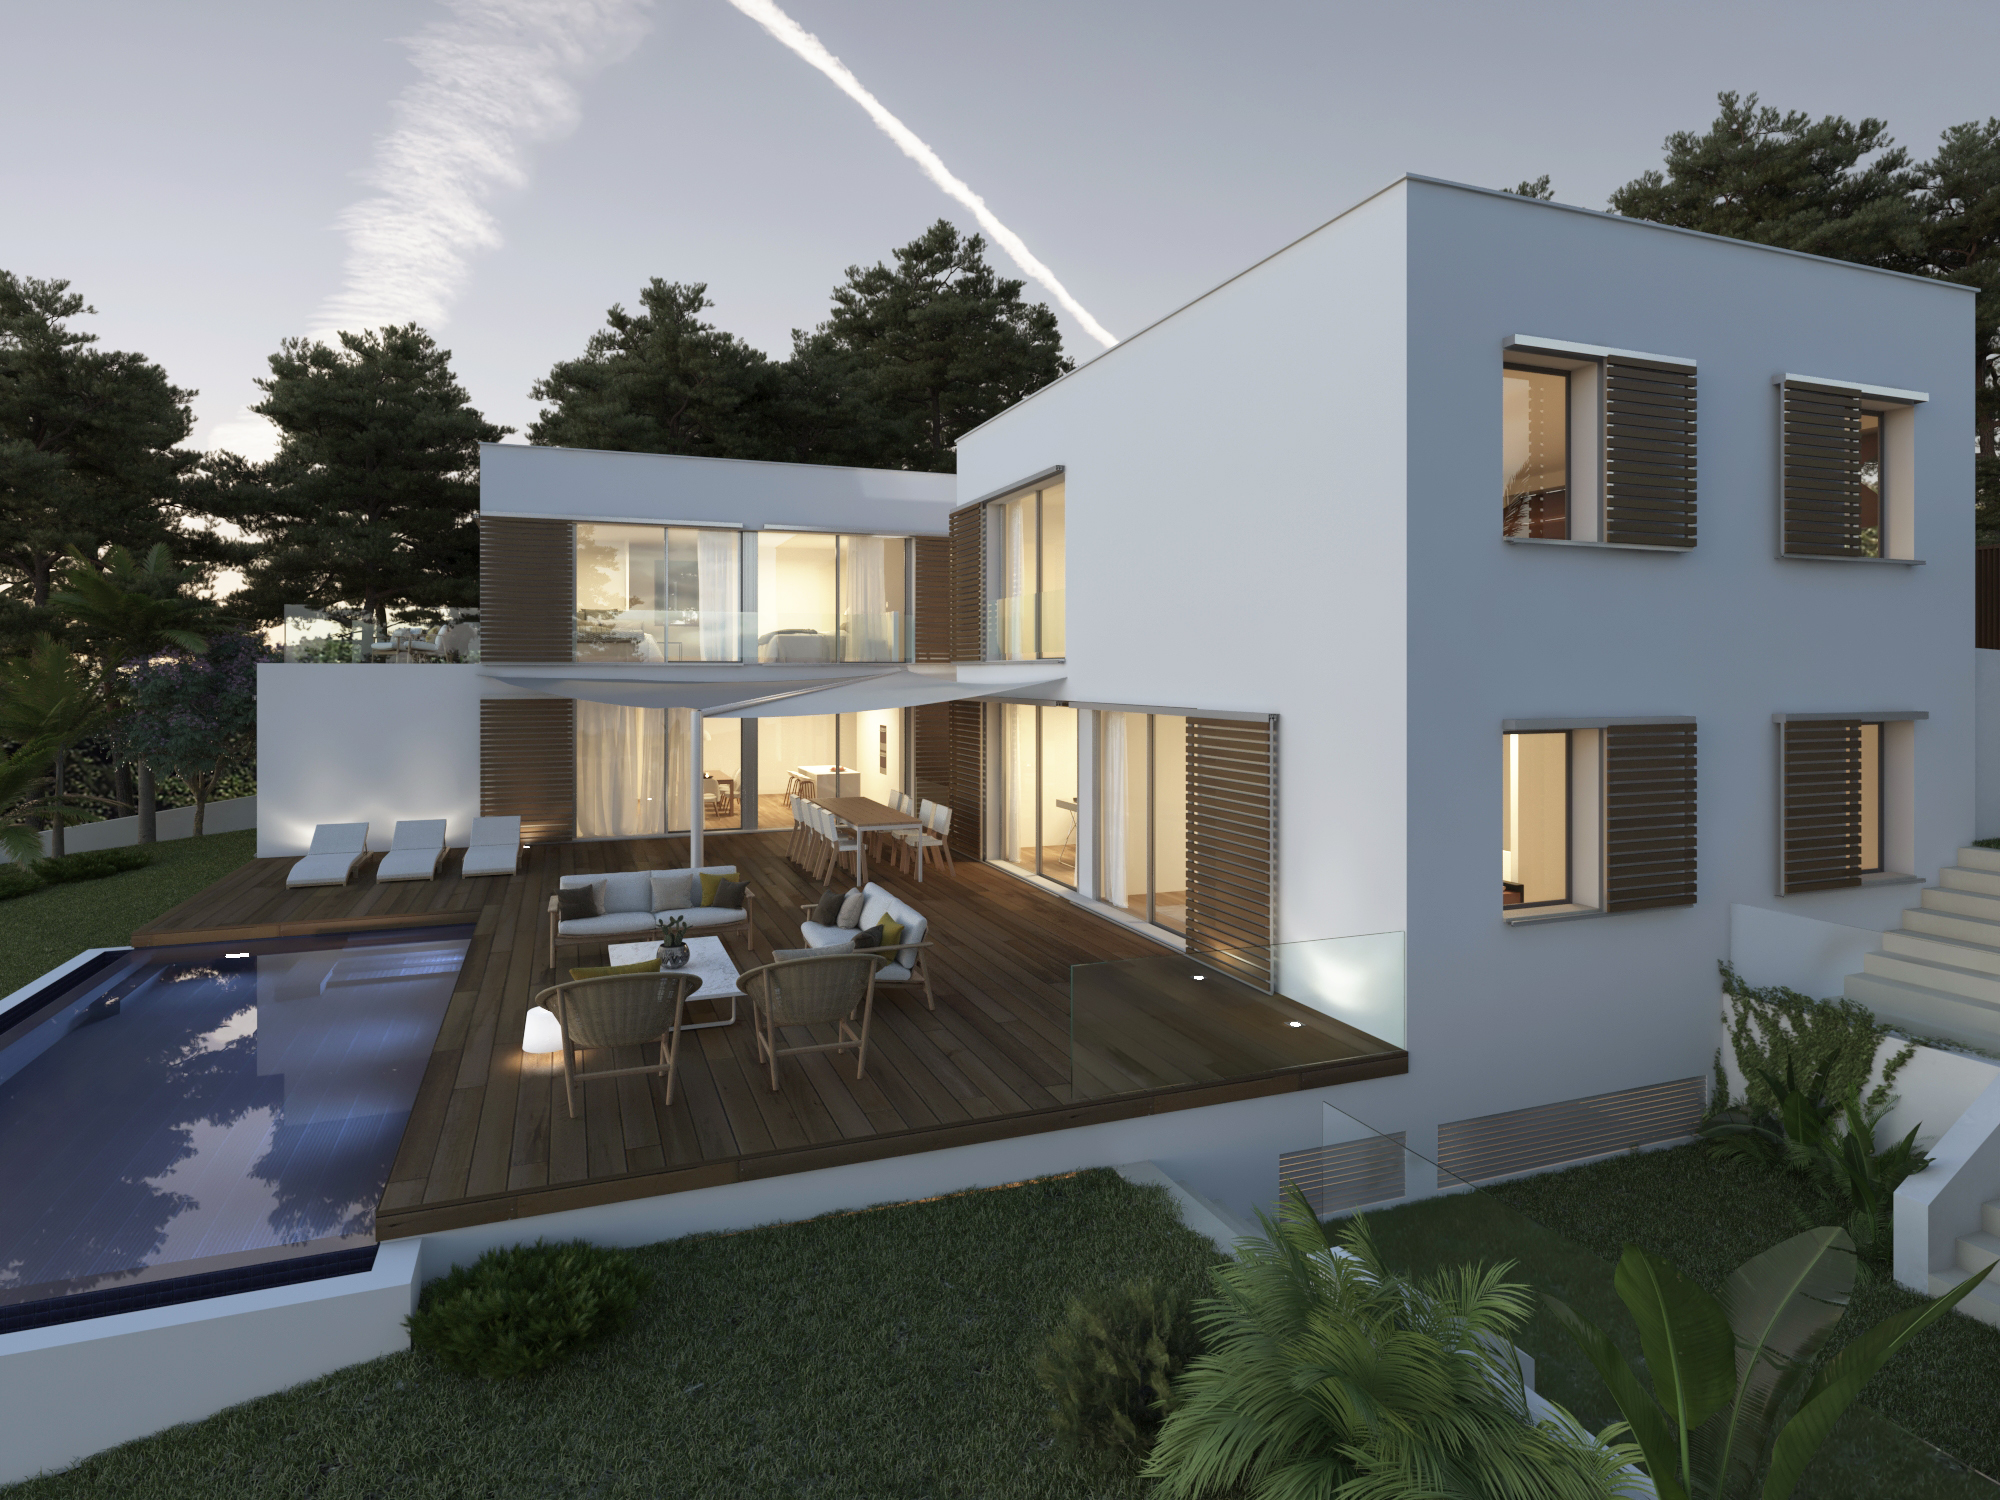 CALA RATJADA: Herrliches Meerblickgrundstück mit Genehmigung für eine exklusive Neubau-Villa in bevorzugter Lage